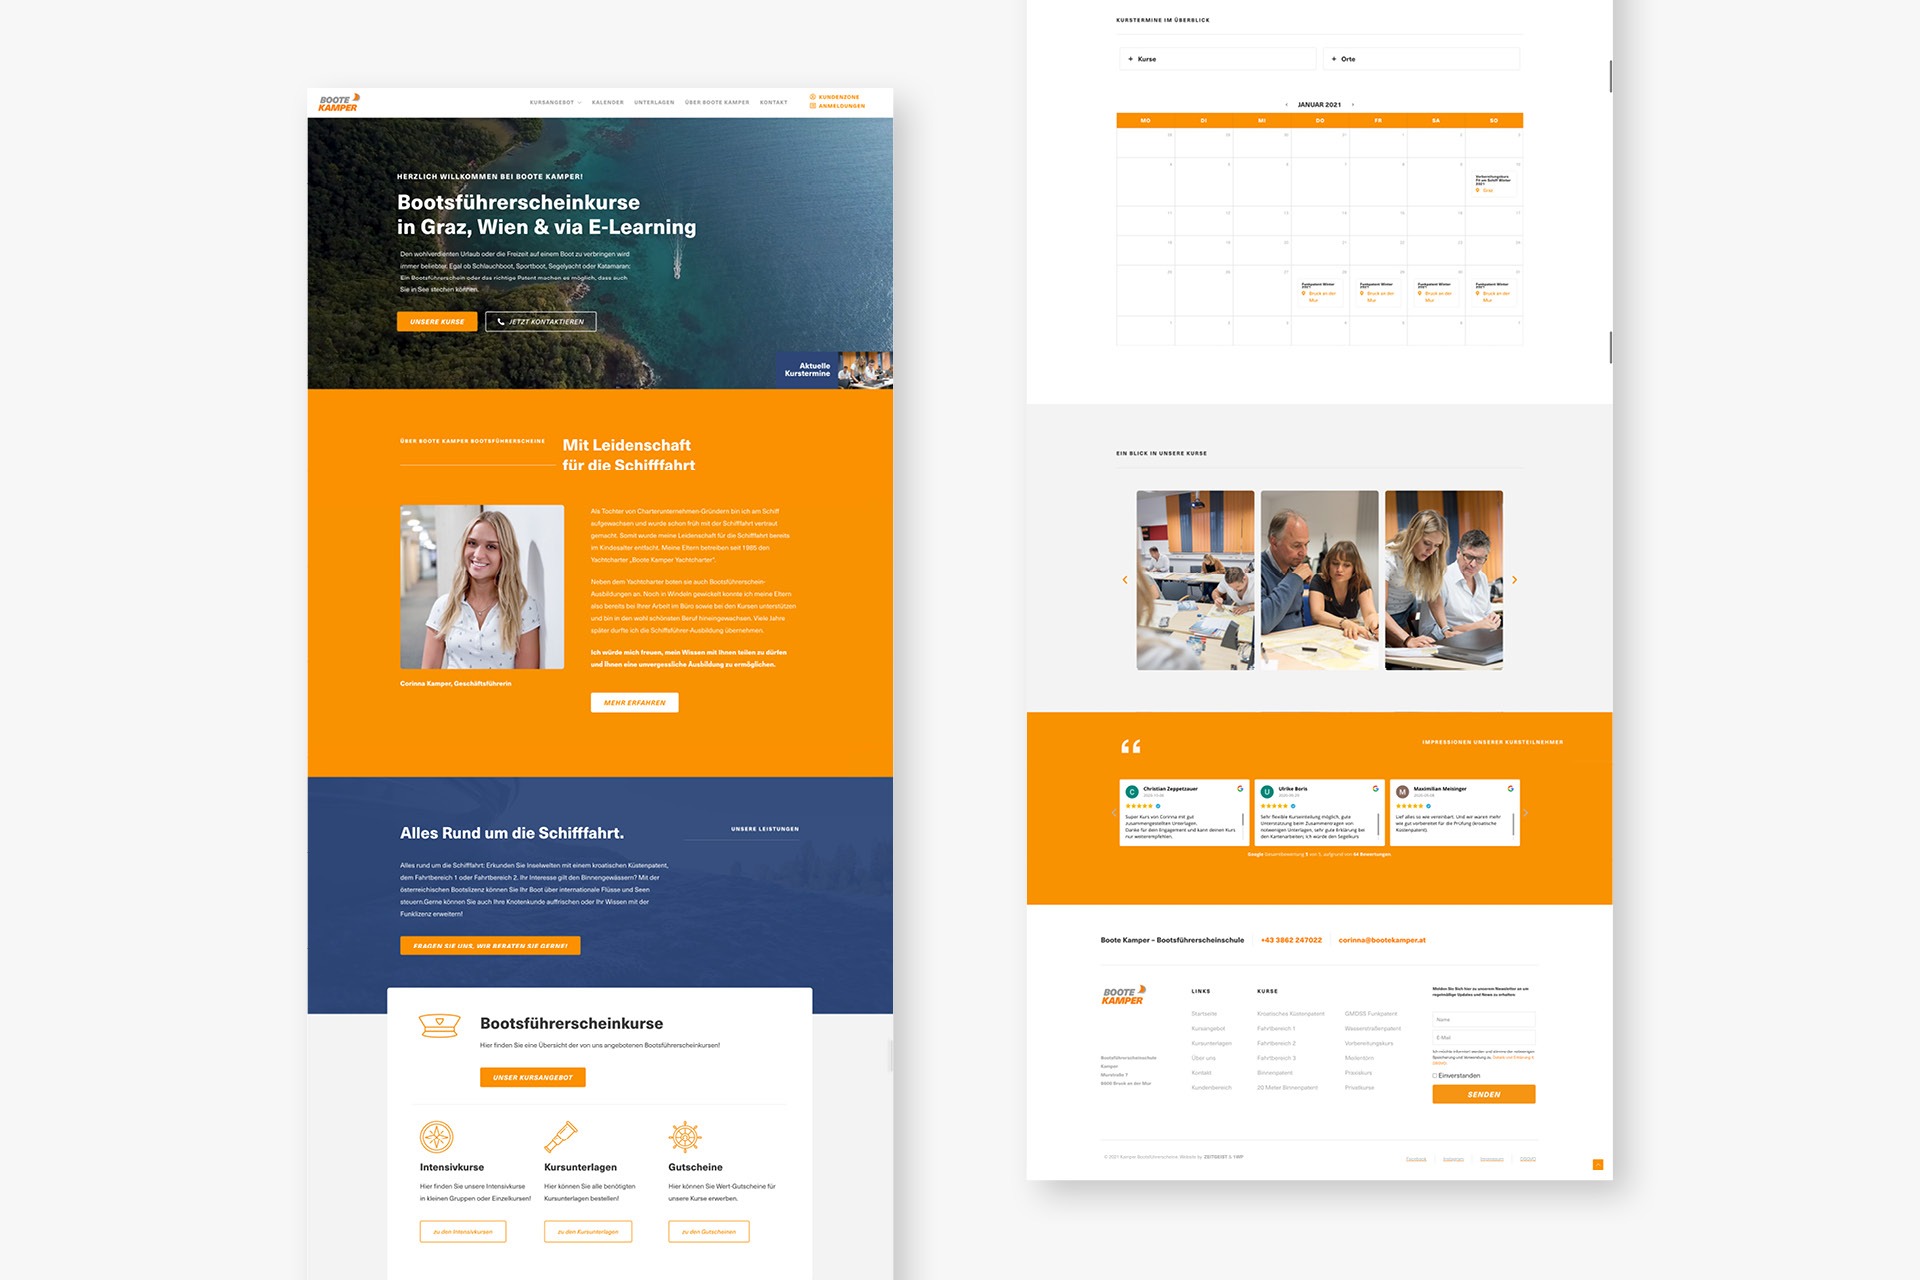 Eine Website mit einem orange-weißen Farbschema vor einem makellos weißen Hintergrund.